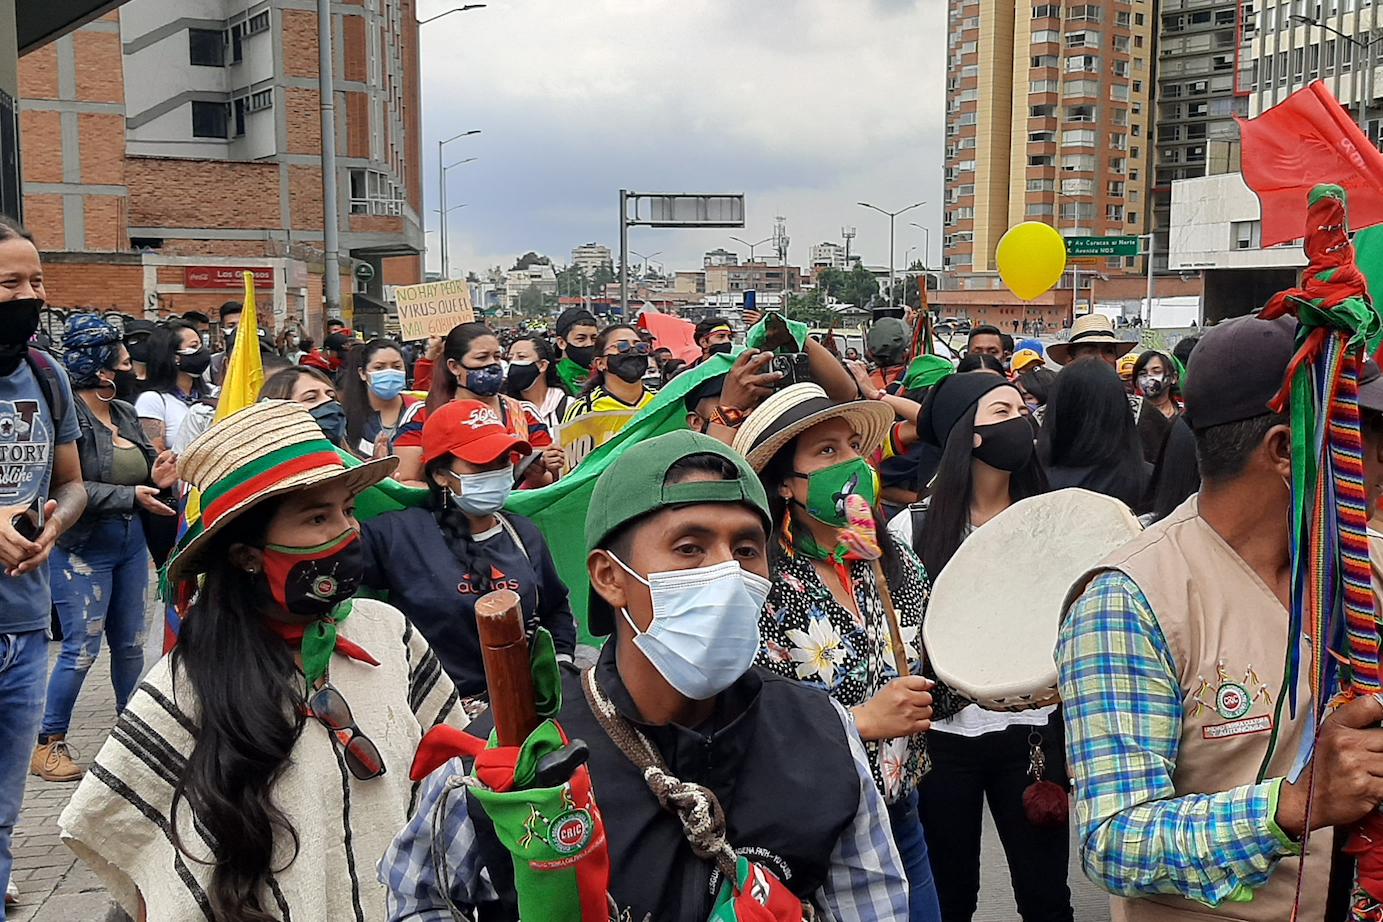 In vielen Städten Kolumbiens regt sich Protest gegen  soziale Missstände. Mancherorts wird er gewaltsam unterdrückt. Die Situation ist nach Einschätzung von Beobachtern von einer gefährlichen Eskalation geprägt.